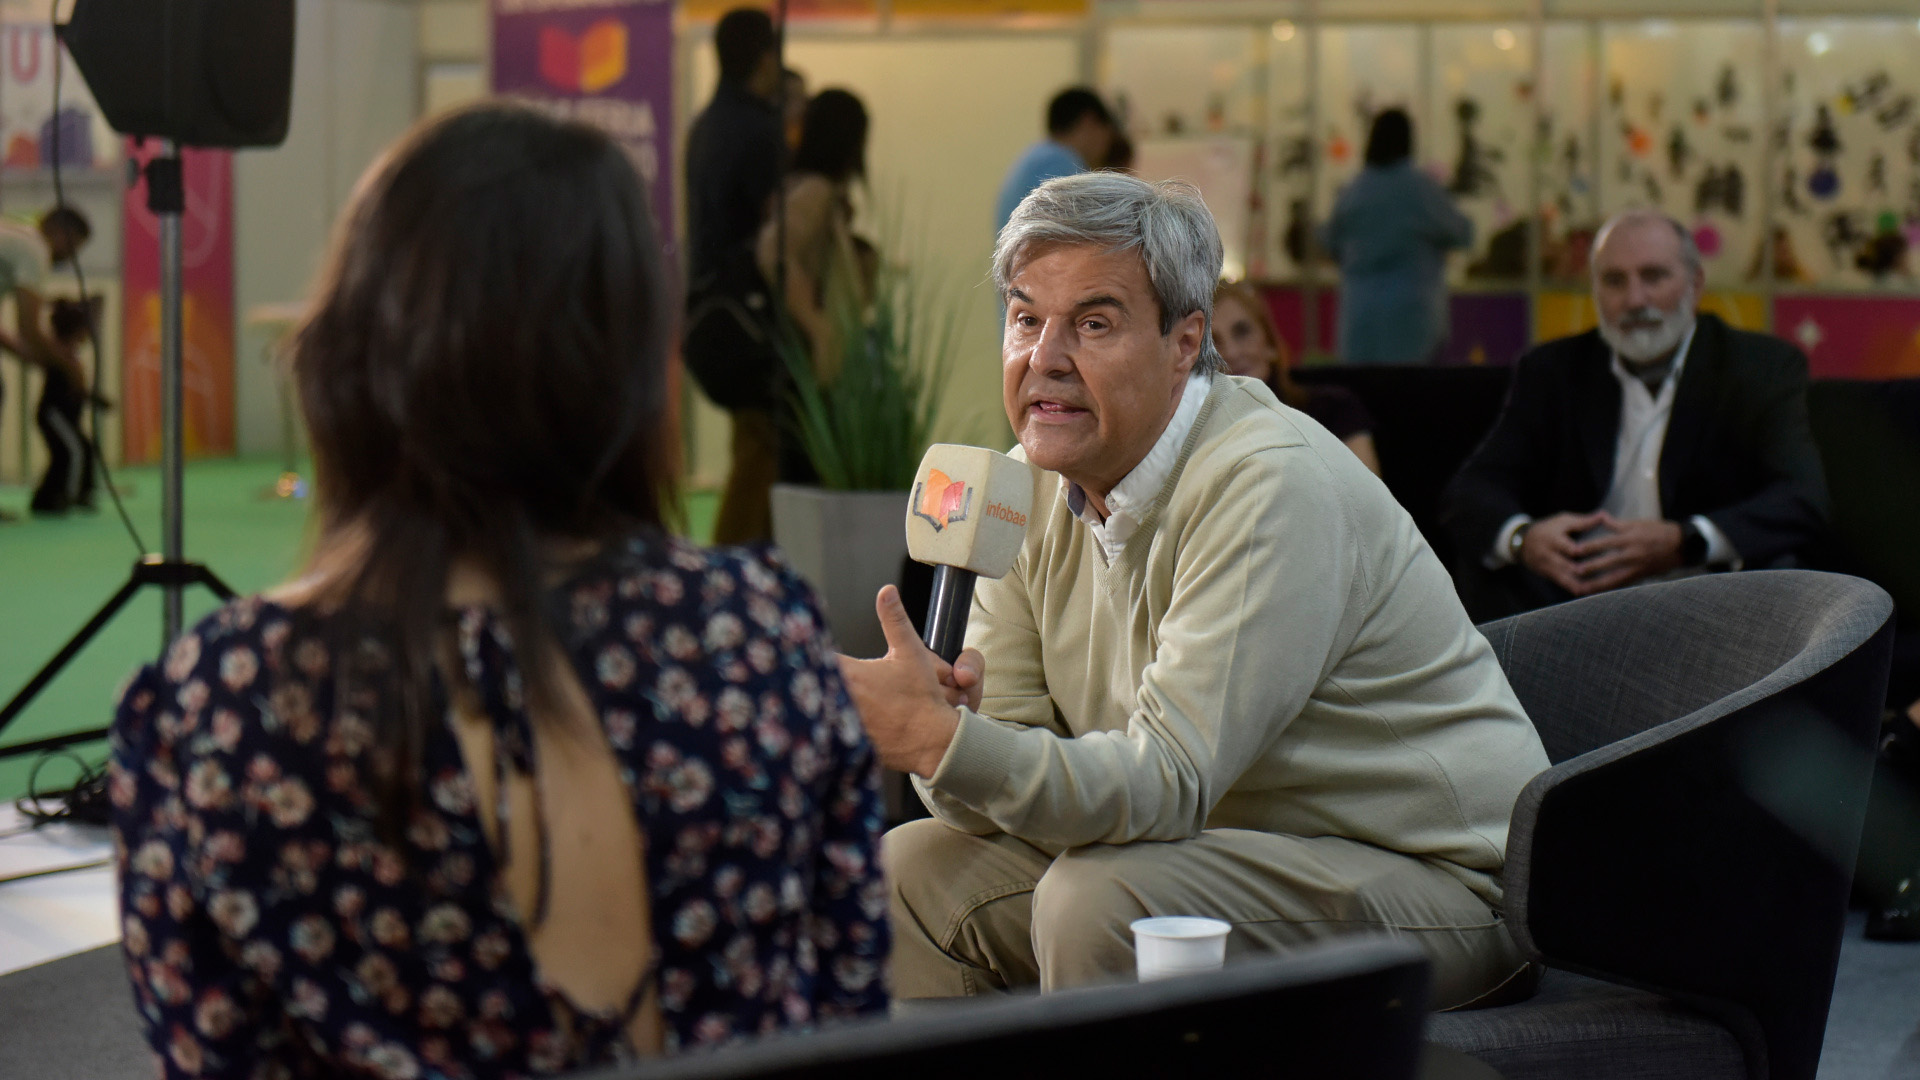 El periodista, editor y escritor Agustín Barletti habló sobre su libro "El hambre del dragón" en el stand de Leamos-Bajalibros en la Feria del Libro de Buenos Aires (Gustavo Gavotti)